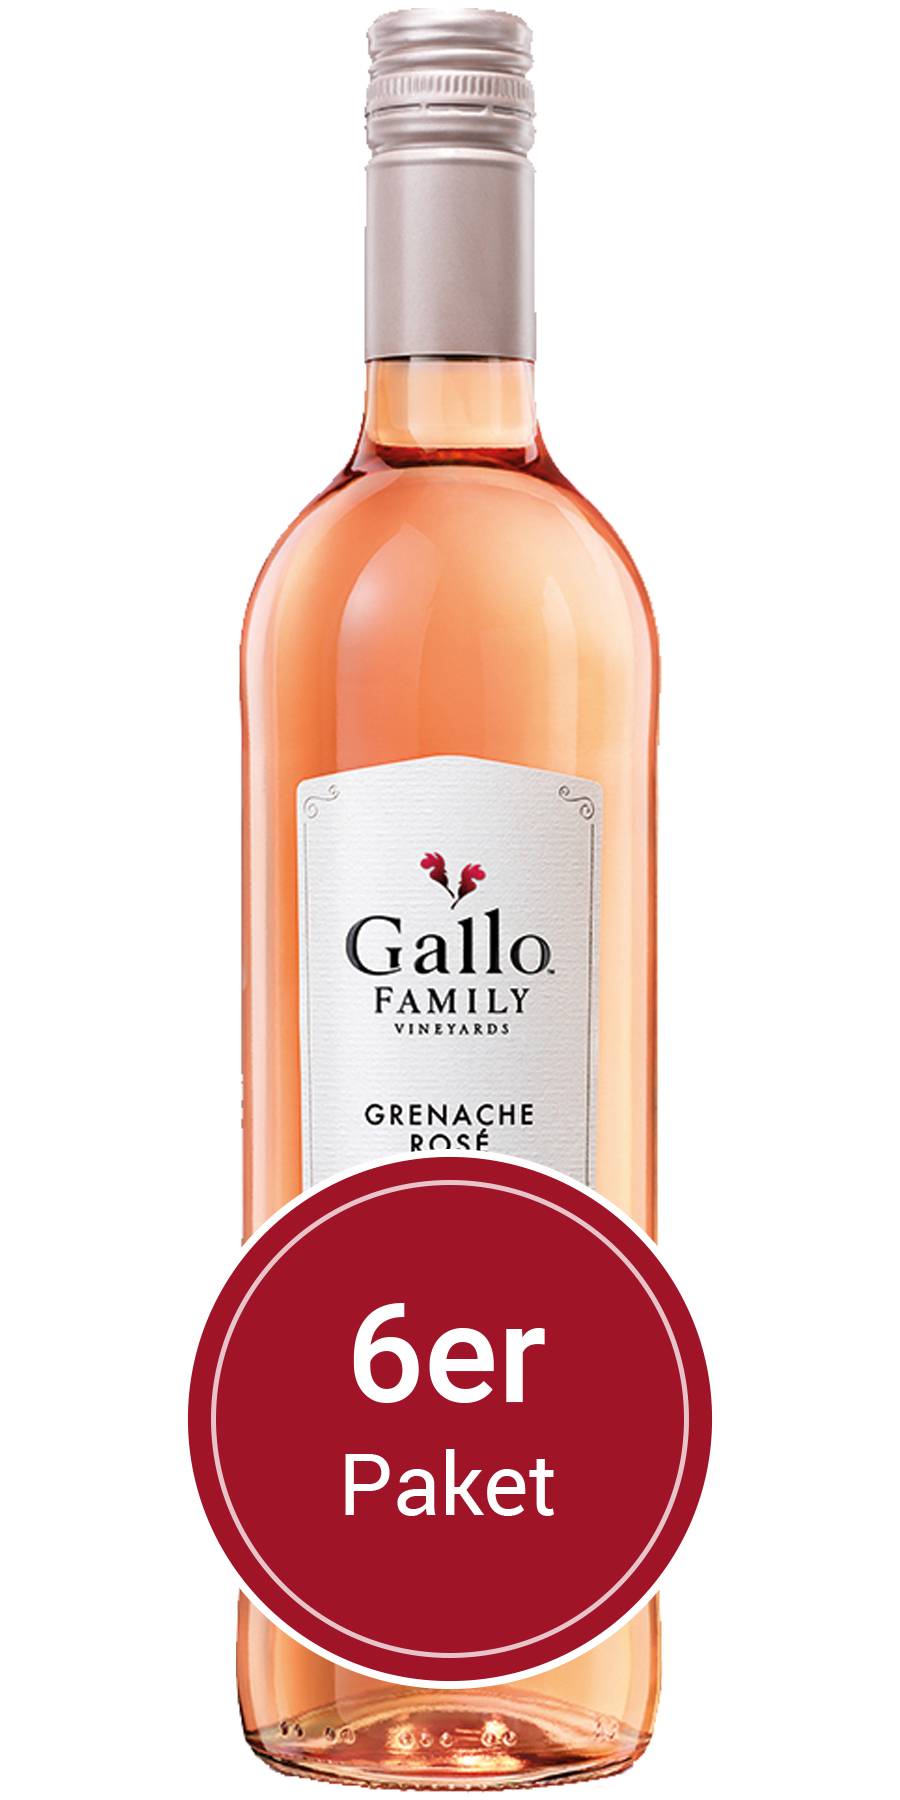 6 Flaschen 0,75 l Rose, Vineyards, Grenache Gallo Kalifornien Family